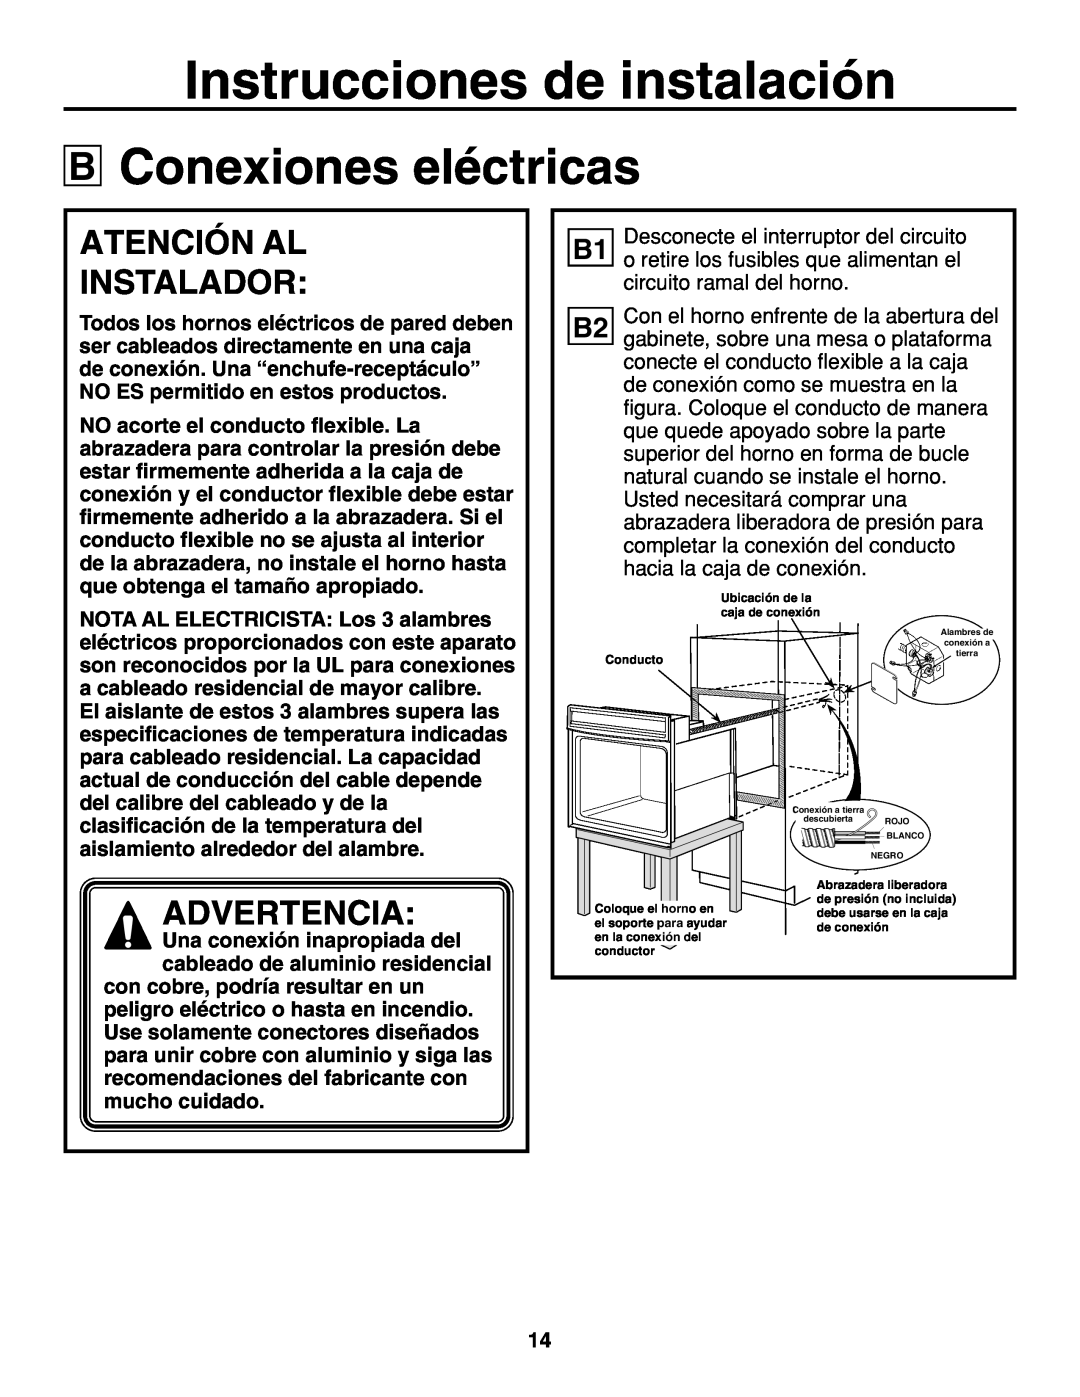 GE r08654v-1 Conexiones eléctricas, Atención Al Instalador, Instrucciones de instalación, Advertencia 